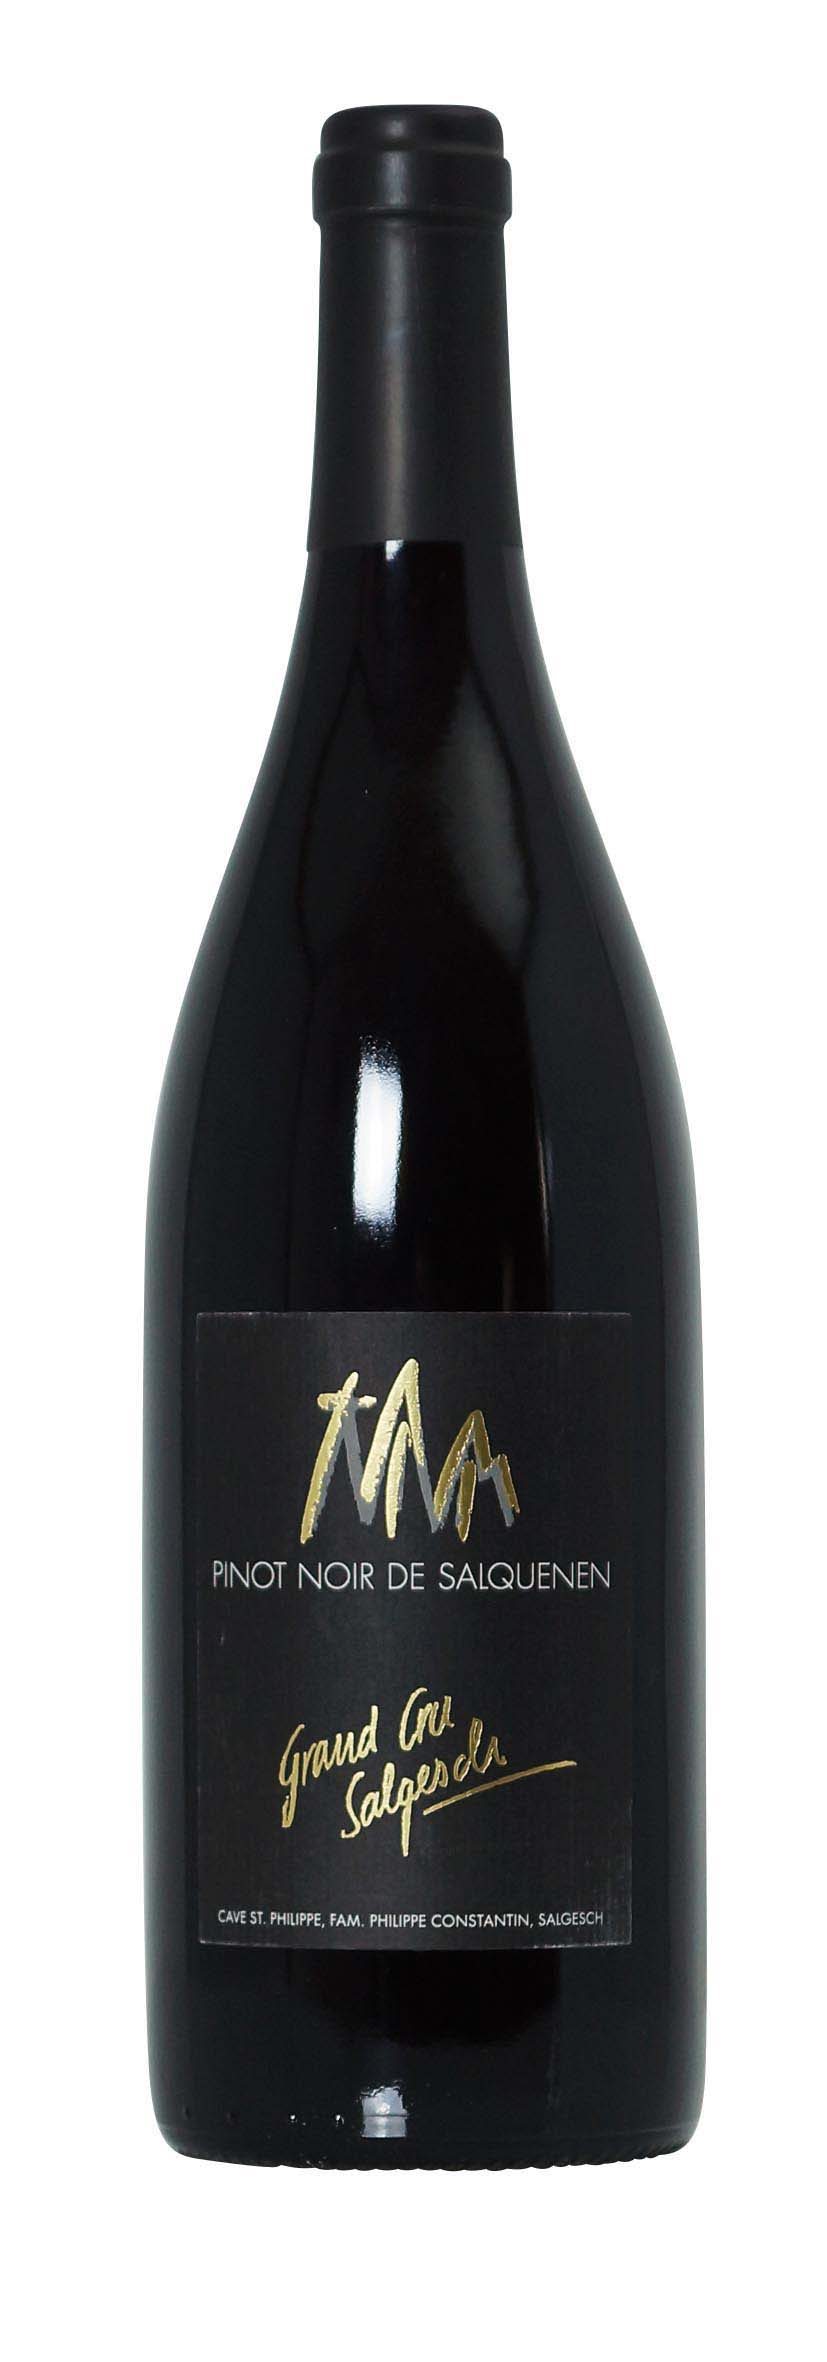 Valais AOC Pinot Noir Grand Cru de Salquenen 2013